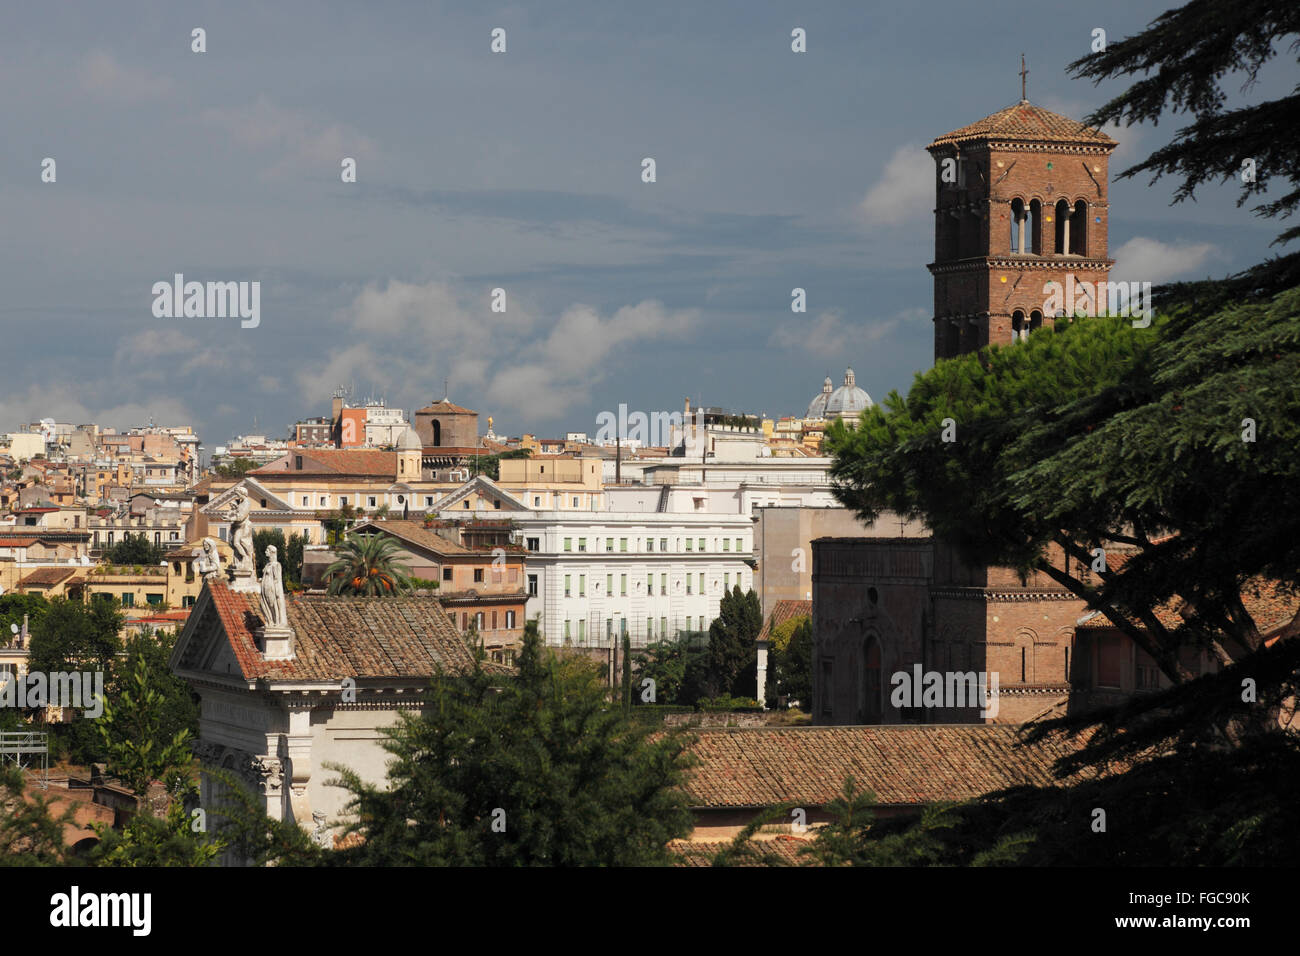 the bell tower of Santa Francesca Romana, Rome, Italy, Europe Stock Photo